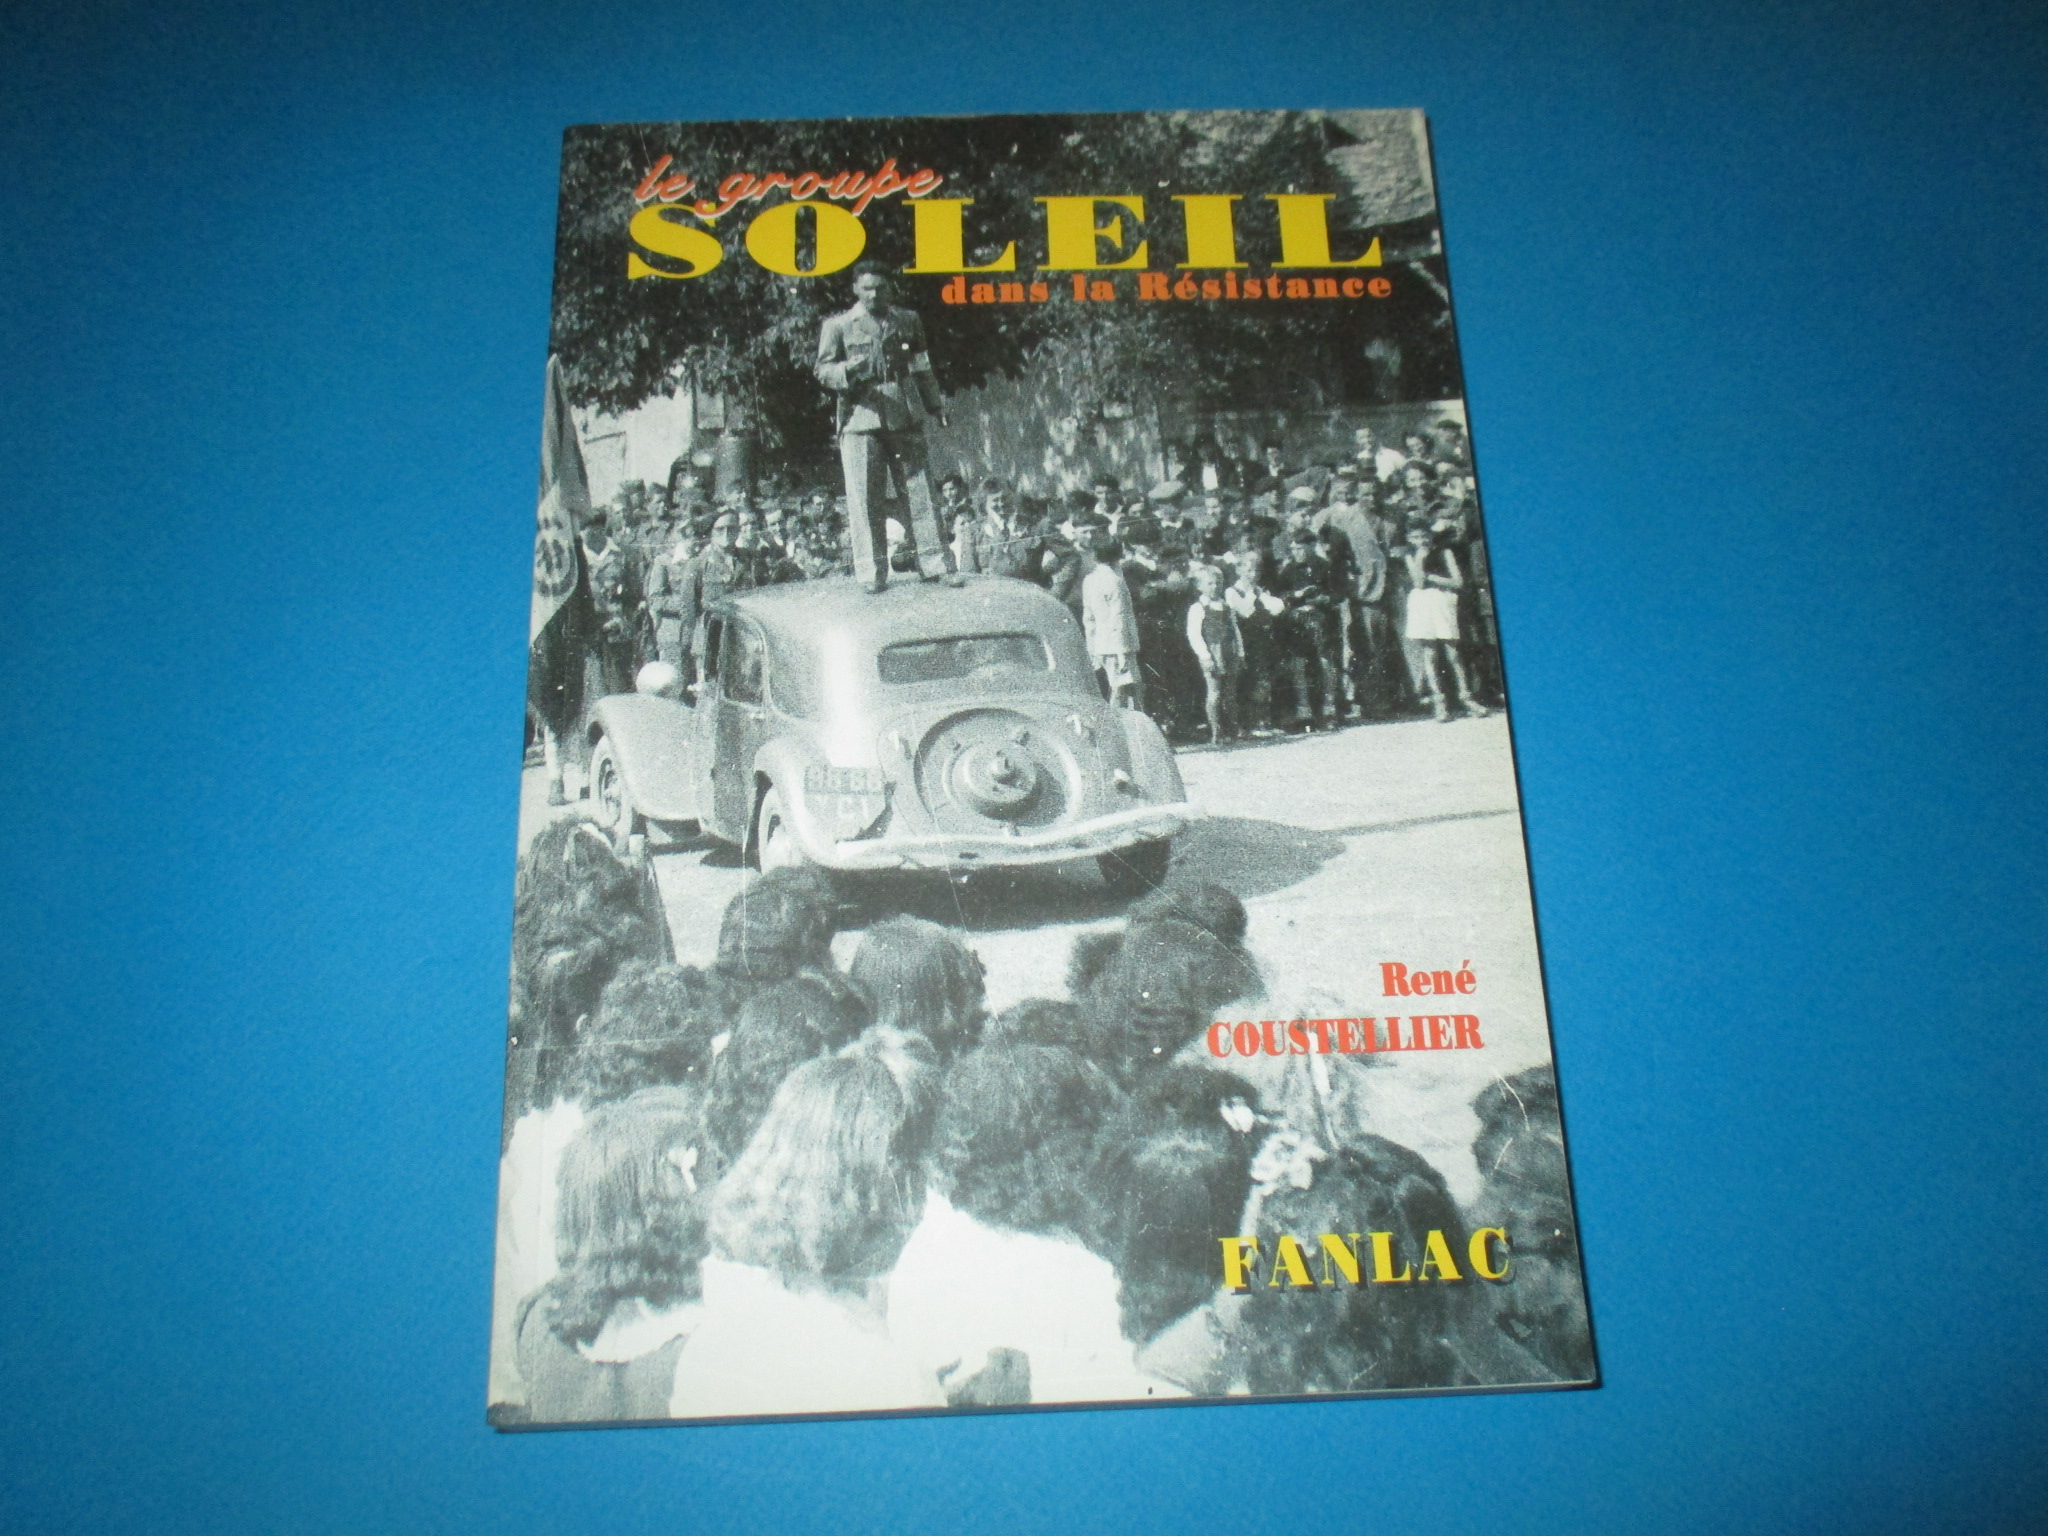 Le groupe Soleil dans la Résistance, Témoignage, René Coustellier, Dordogne, Fanlac